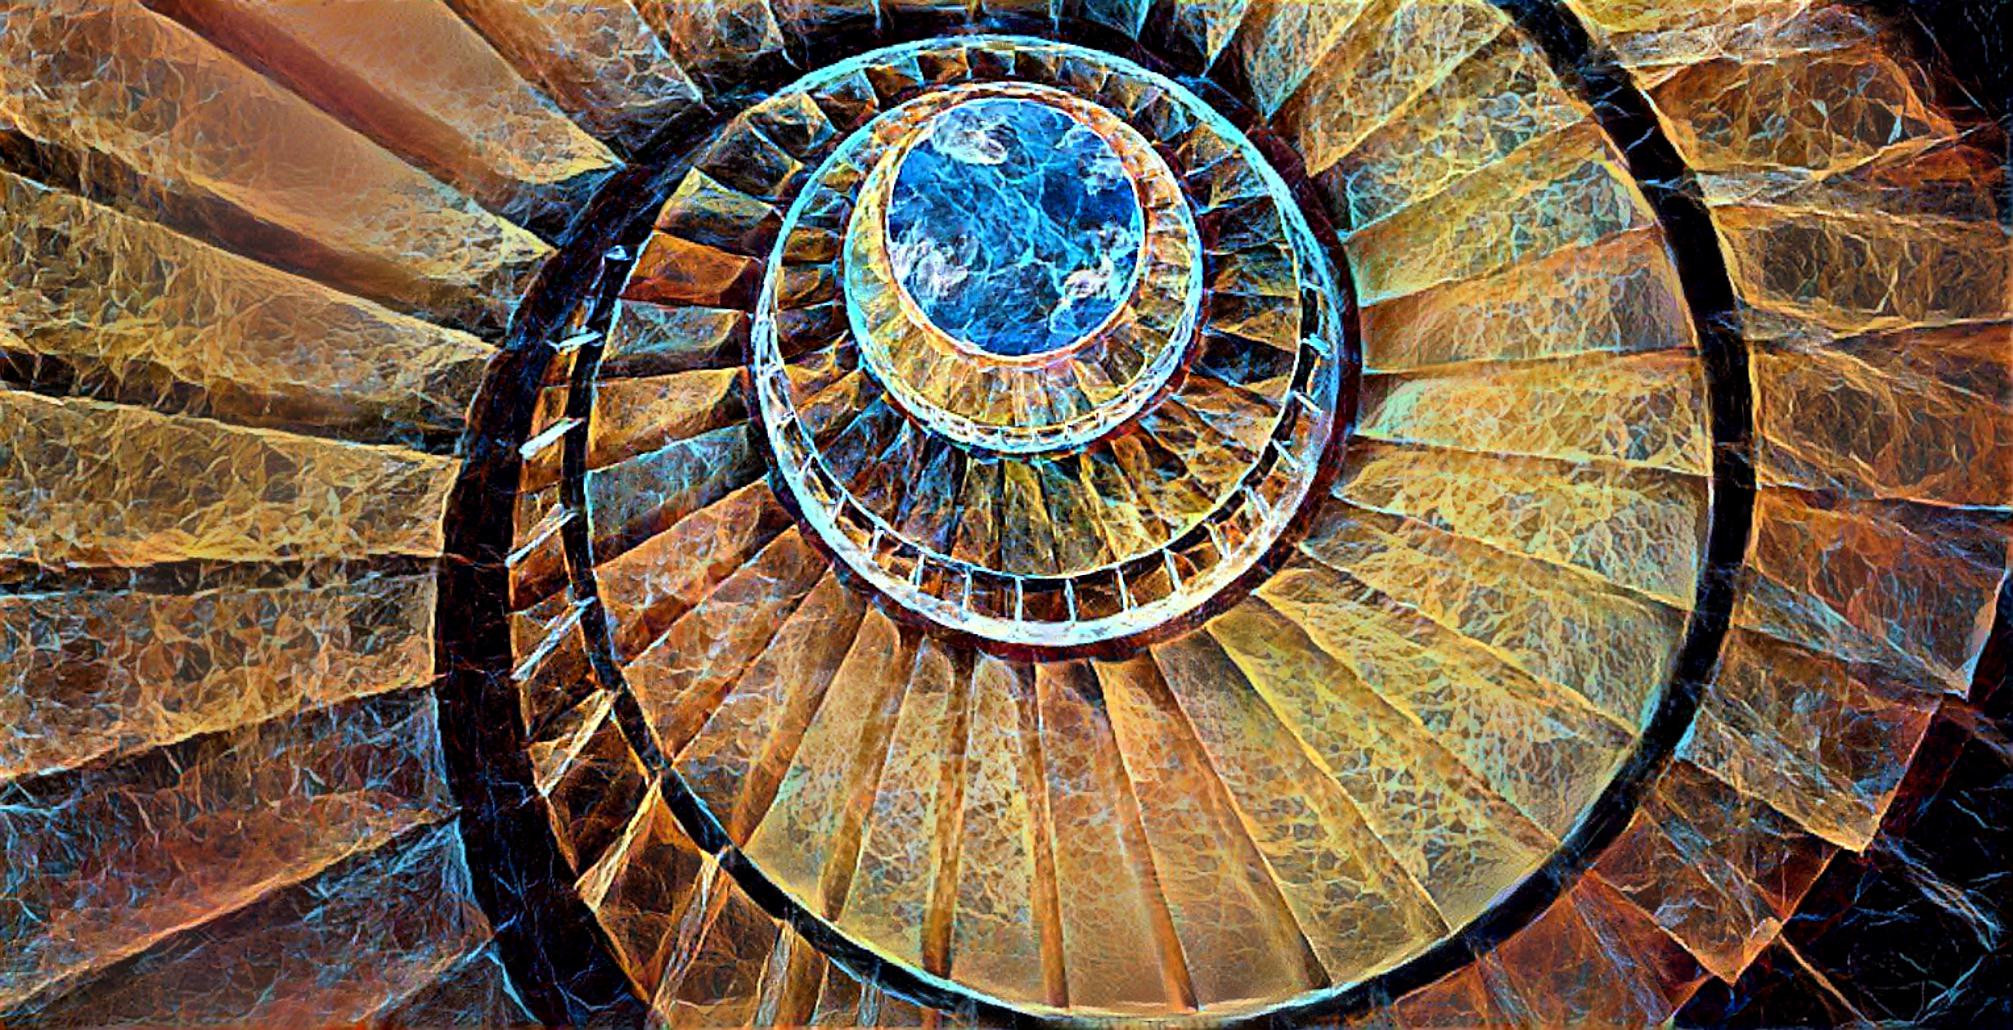 Upward Spiral Stairs